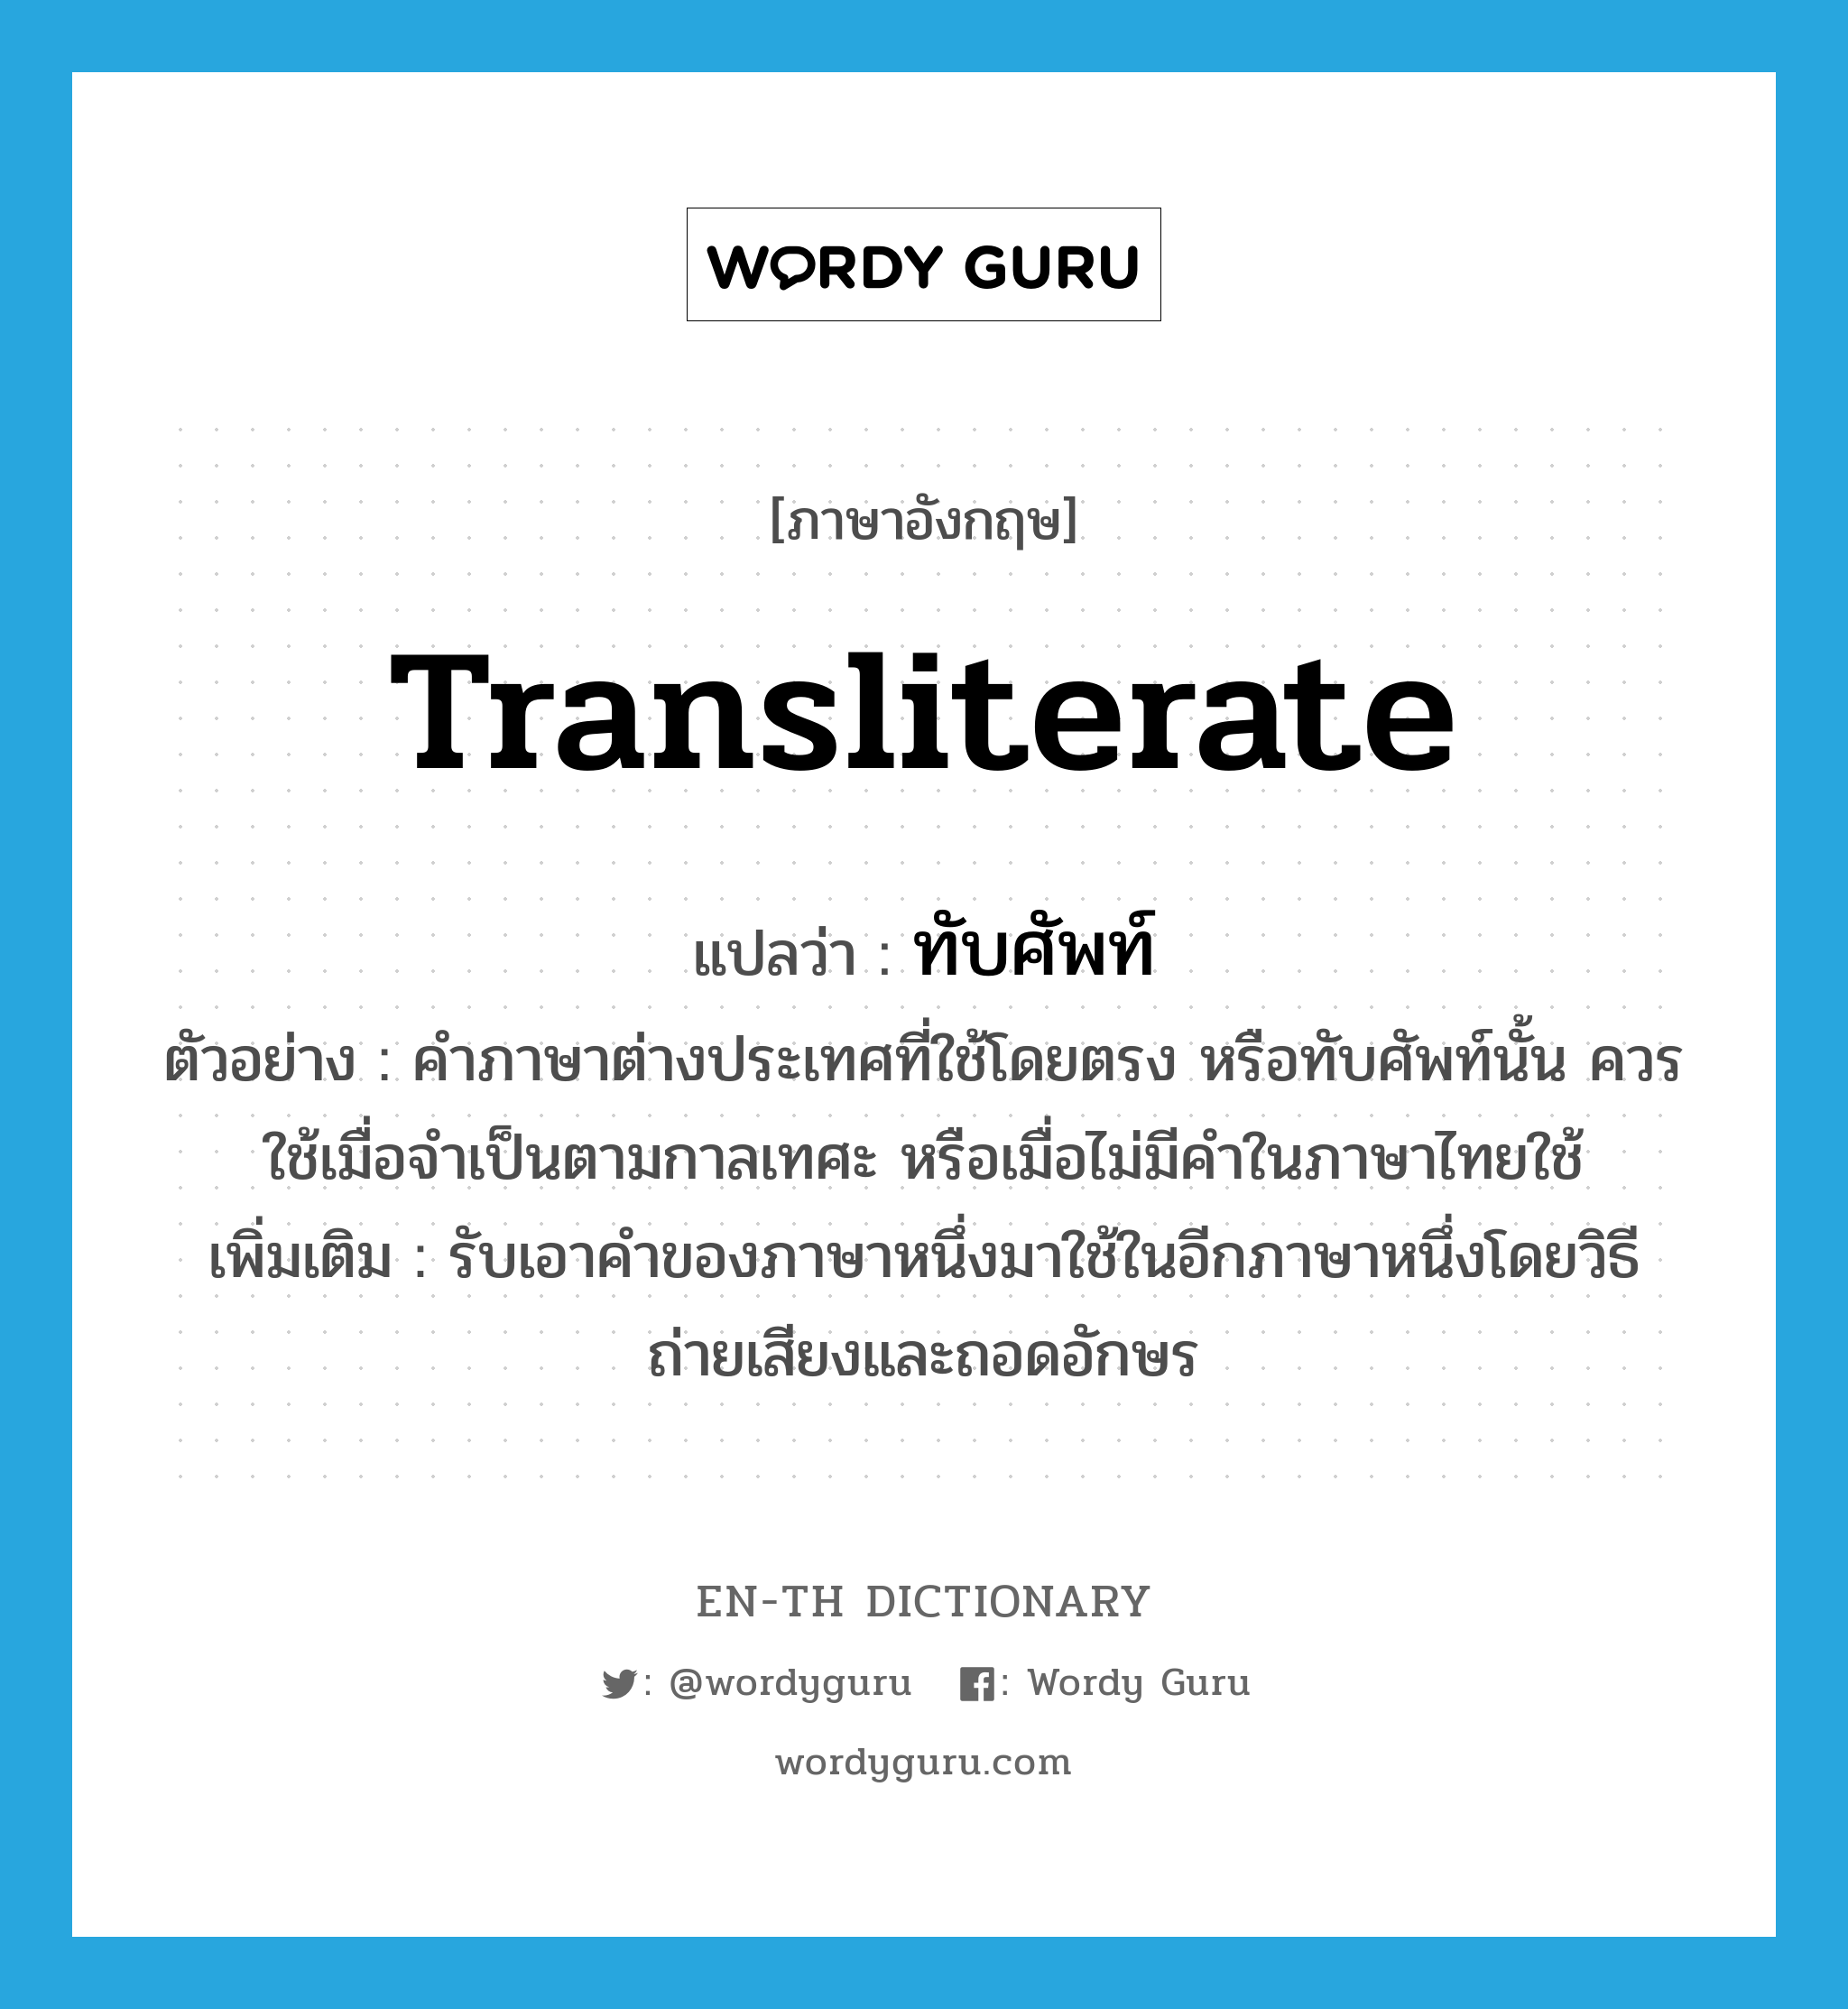 ทับศัพท์ ภาษาอังกฤษ?, คำศัพท์ภาษาอังกฤษ ทับศัพท์ แปลว่า transliterate ประเภท V ตัวอย่าง คำภาษาต่างประเทศที่ใช้โดยตรง หรือทับศัพท์นั้น ควรใช้เมื่อจำเป็นตามกาลเทศะ หรือเมื่อไม่มีคำในภาษาไทยใช้ เพิ่มเติม รับเอาคำของภาษาหนึ่งมาใช้ในอีกภาษาหนึ่งโดยวิธีถ่ายเสียงและถอดอักษร หมวด V